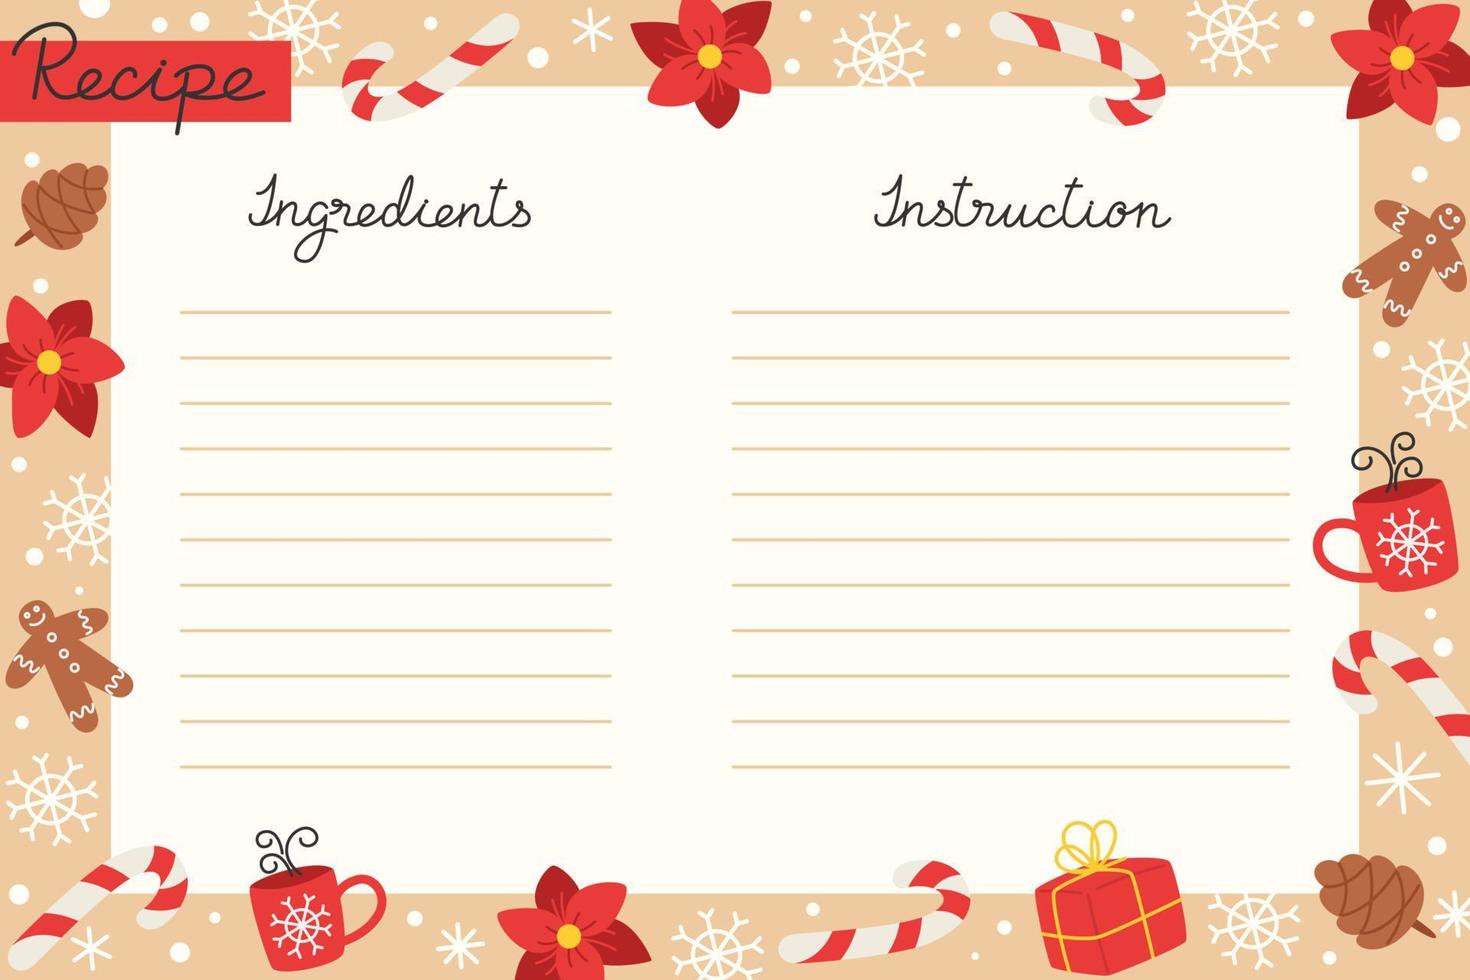 julhelg bakning recept mall med ingredienser och instruktioner vektor